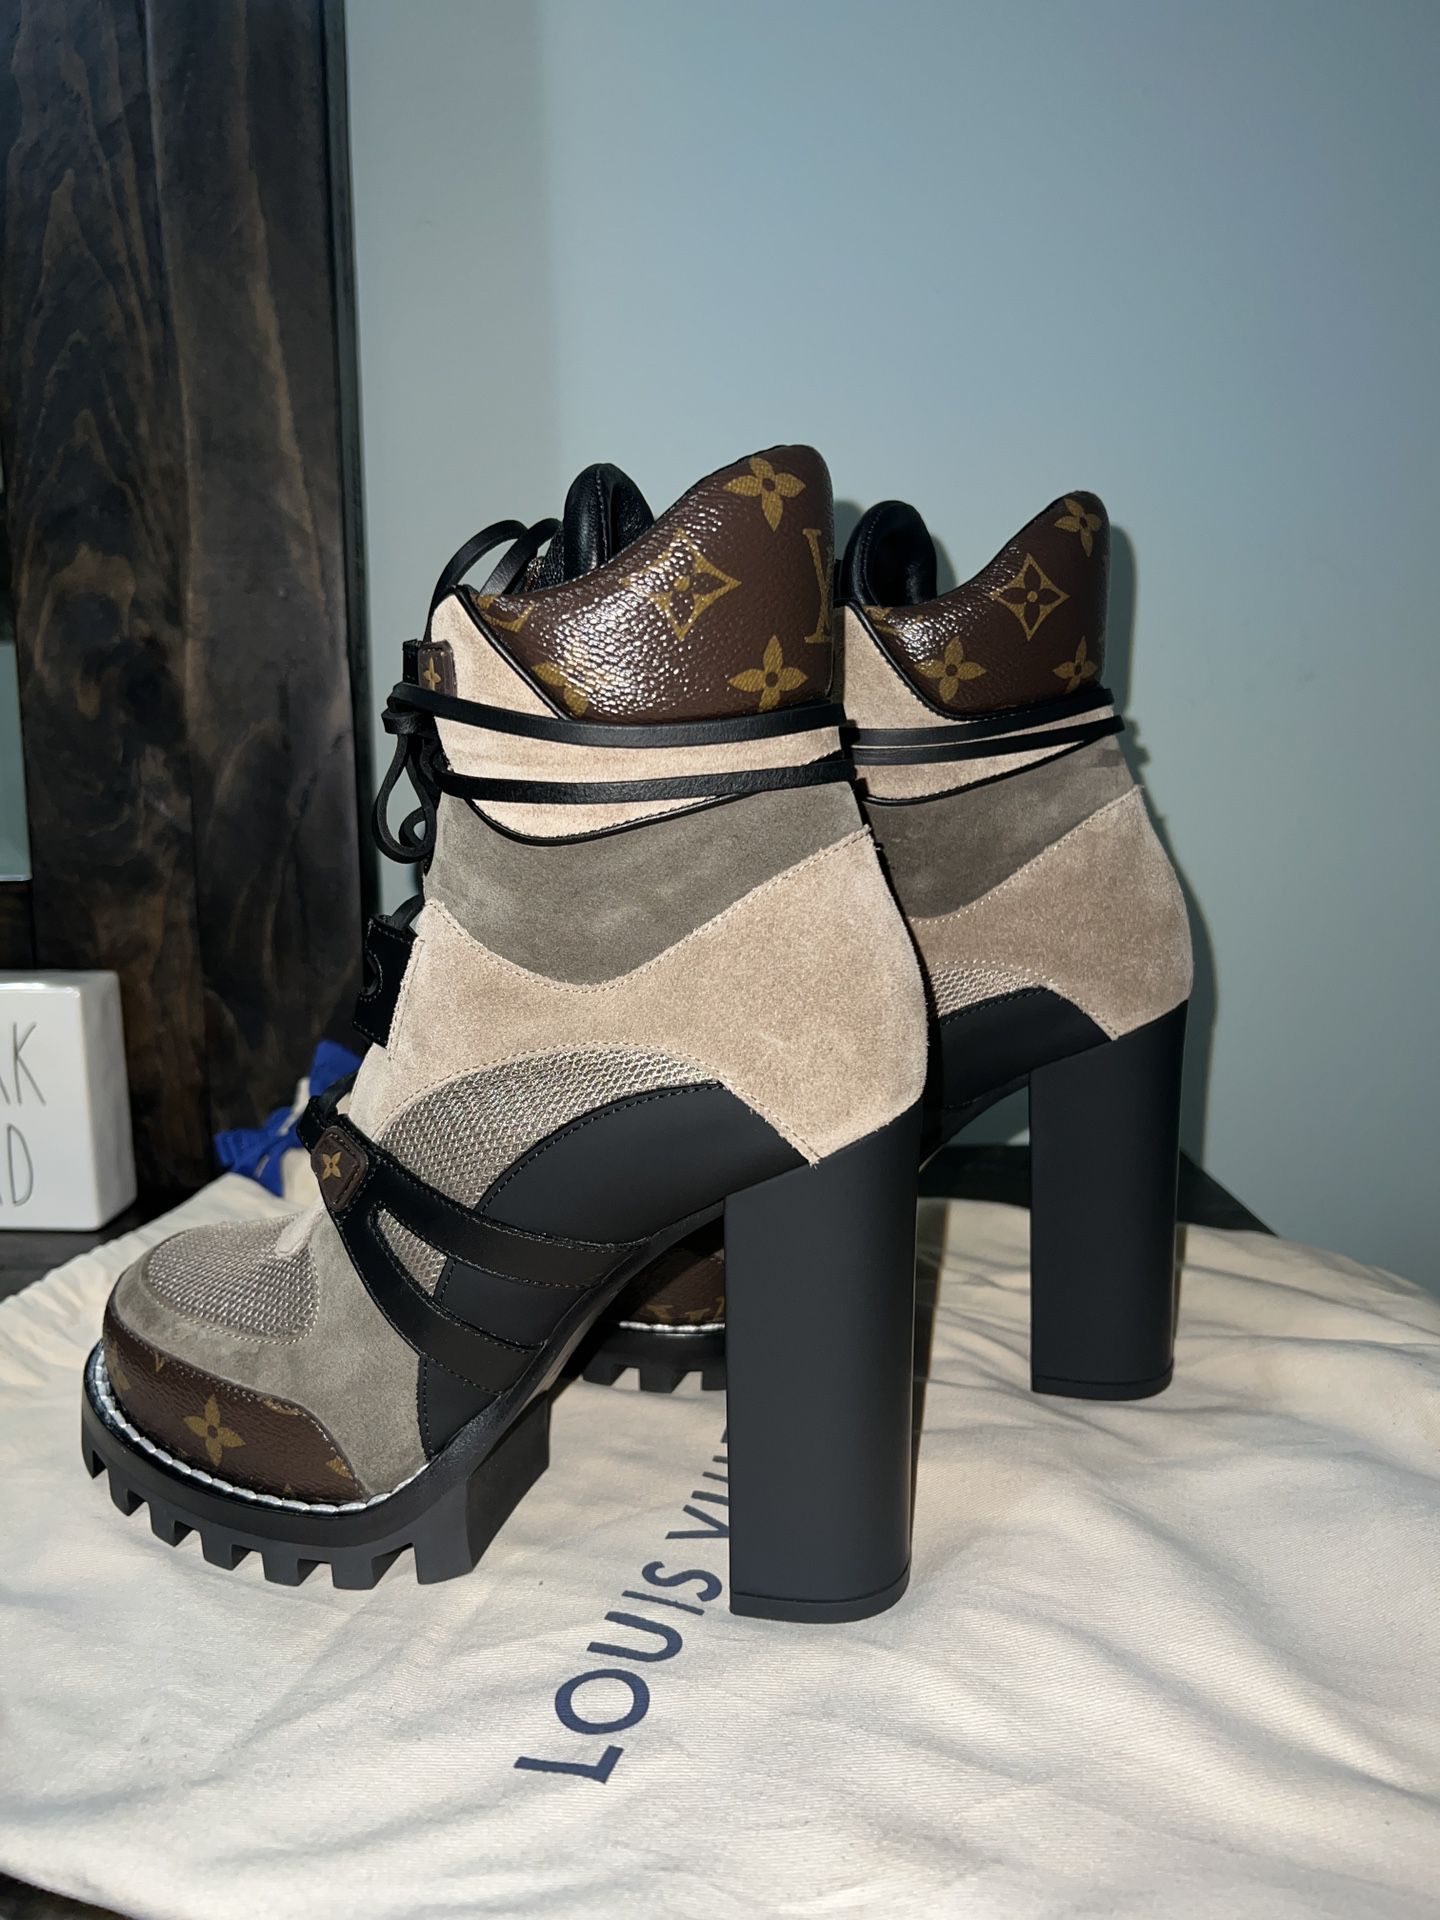 LV Black/ Brown Monogram Platform Dessert Ankle Boots for Sale in  Philadelphia, PA - OfferUp